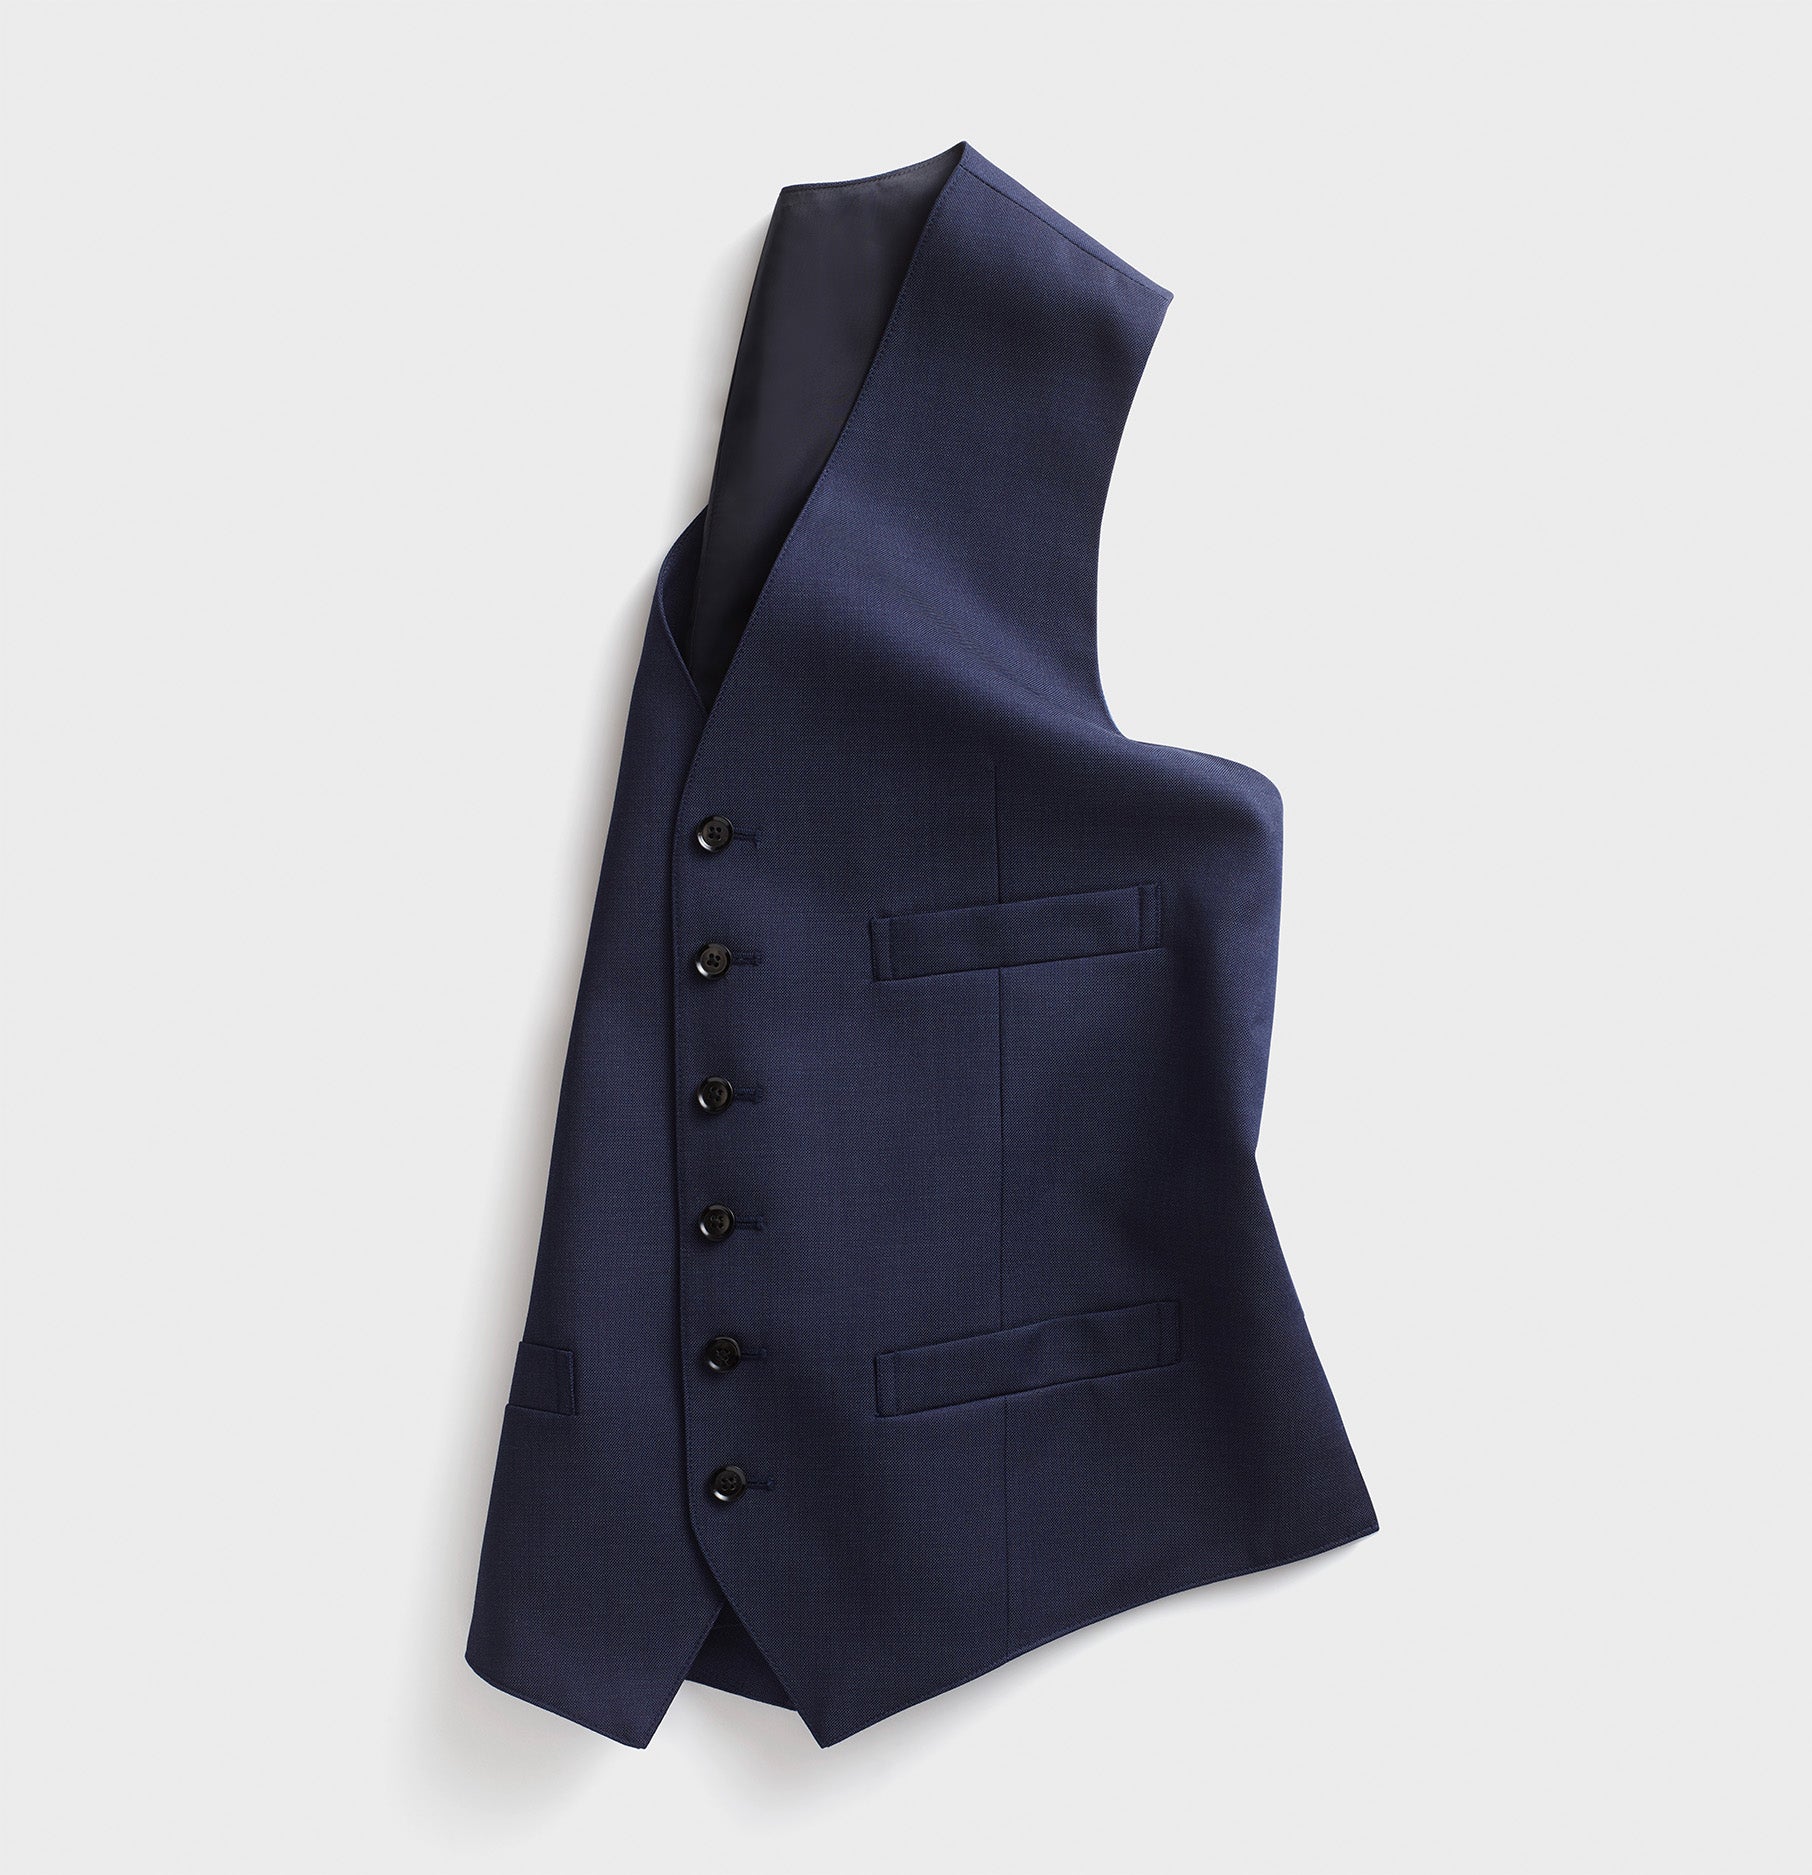 Custom 2017 Blue Suit Lapel Groom Groomsman Incision Thin Body Suit jacket   Pants  Vestman Suit Slim Fit Pants Jacket  Suits  AliExpress